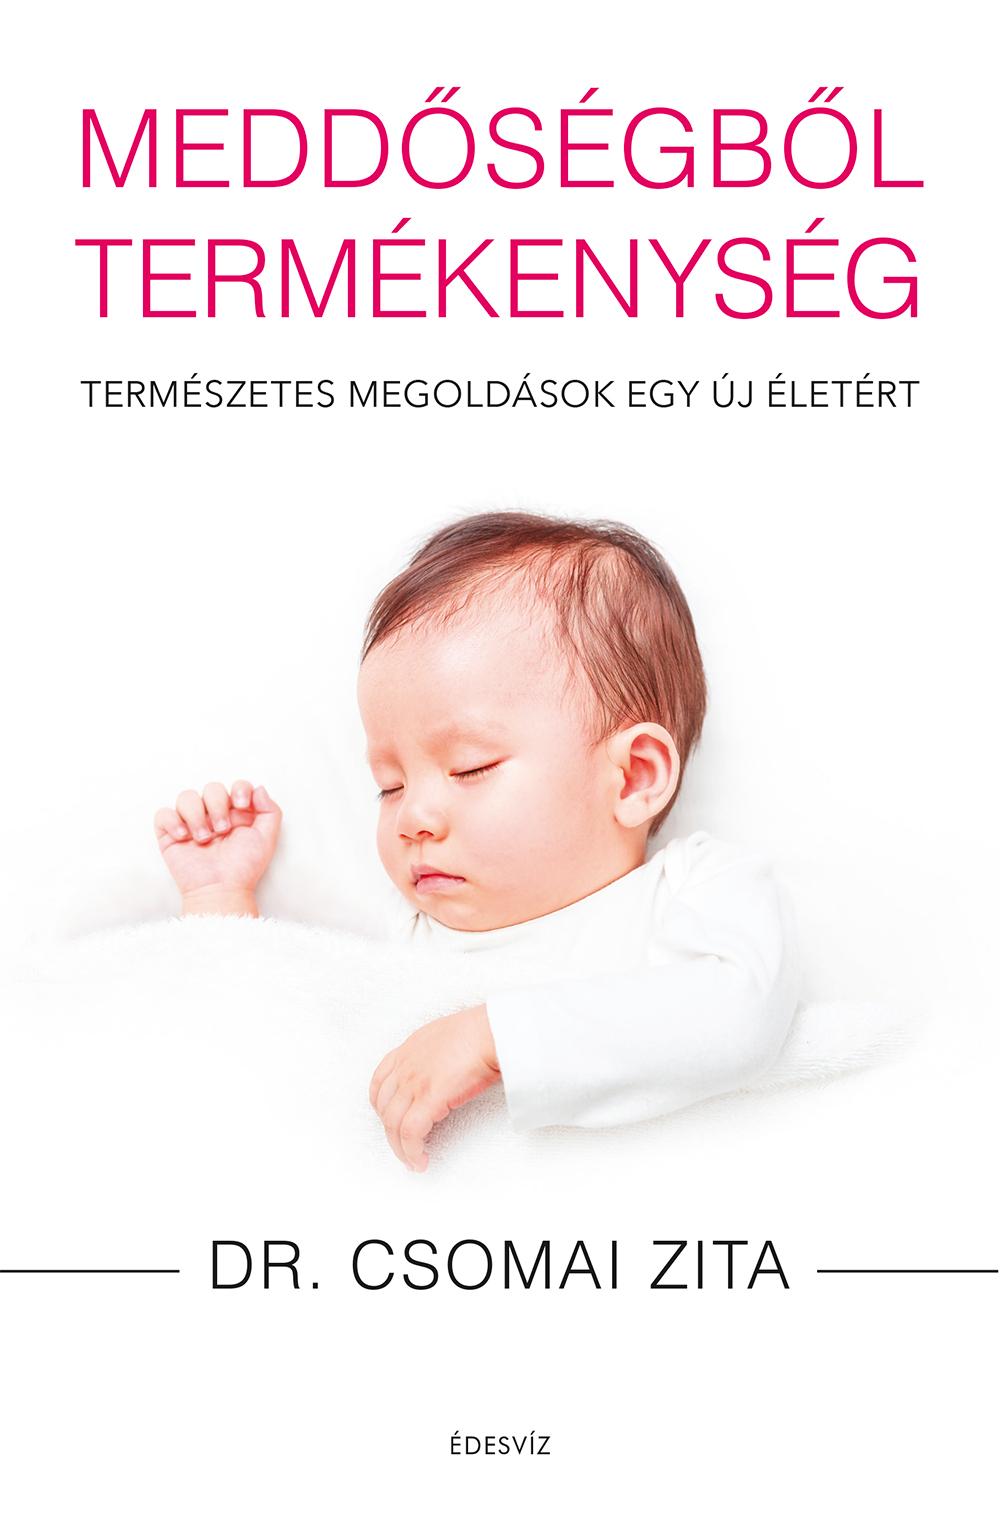 Dr. Csomai Zita - Meddsgbl Termkenysg